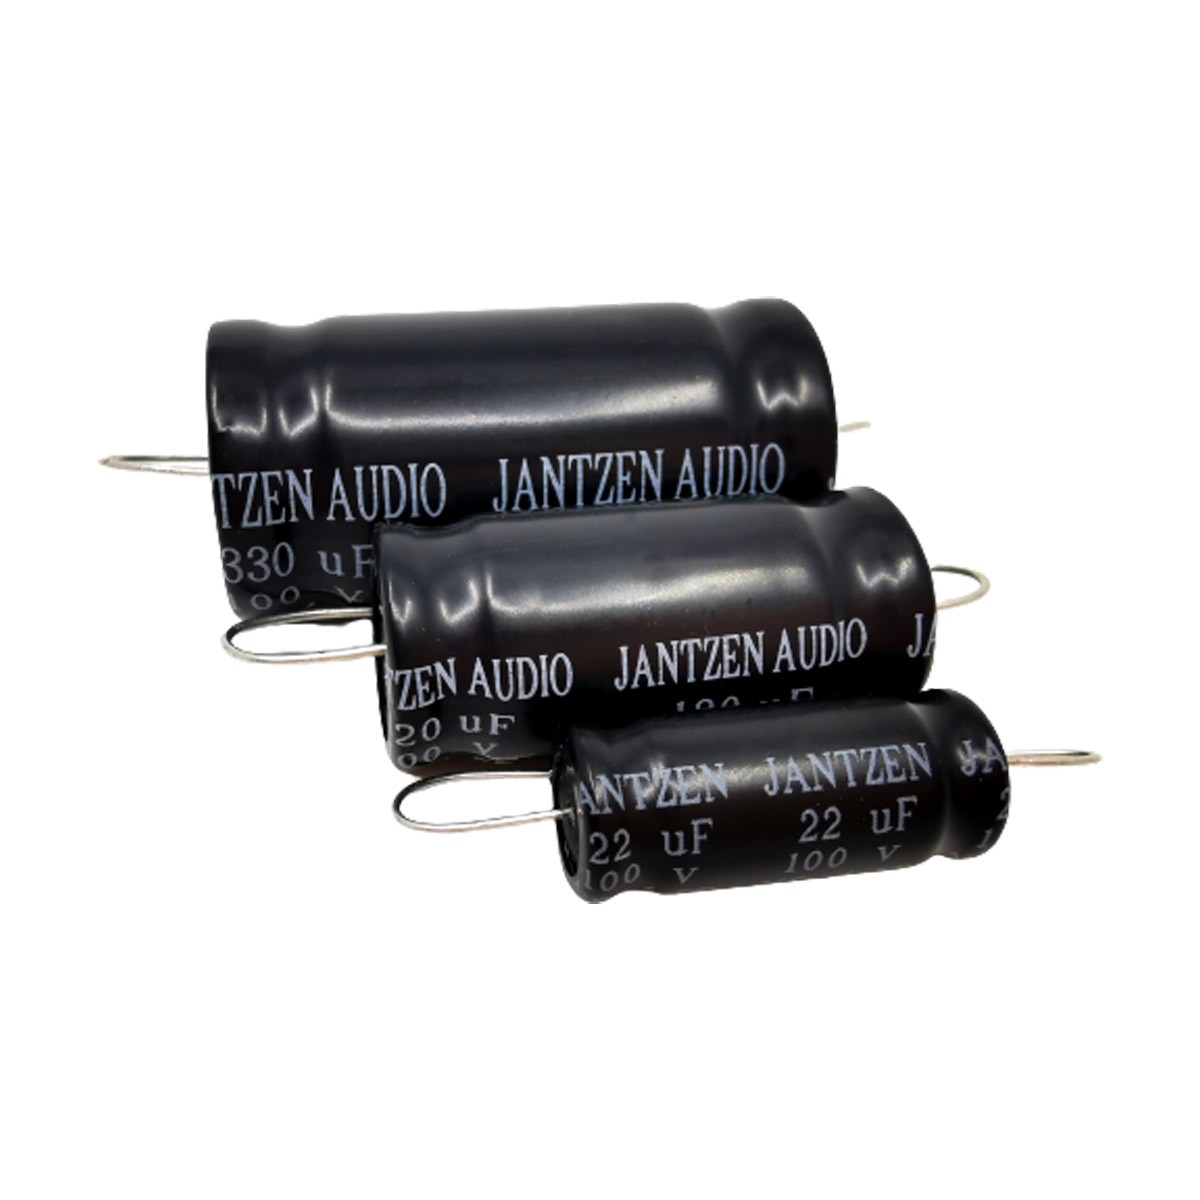 JANTZEN AUDIO ELECAP Condensateur Électrolytique 100V 120µF 5%